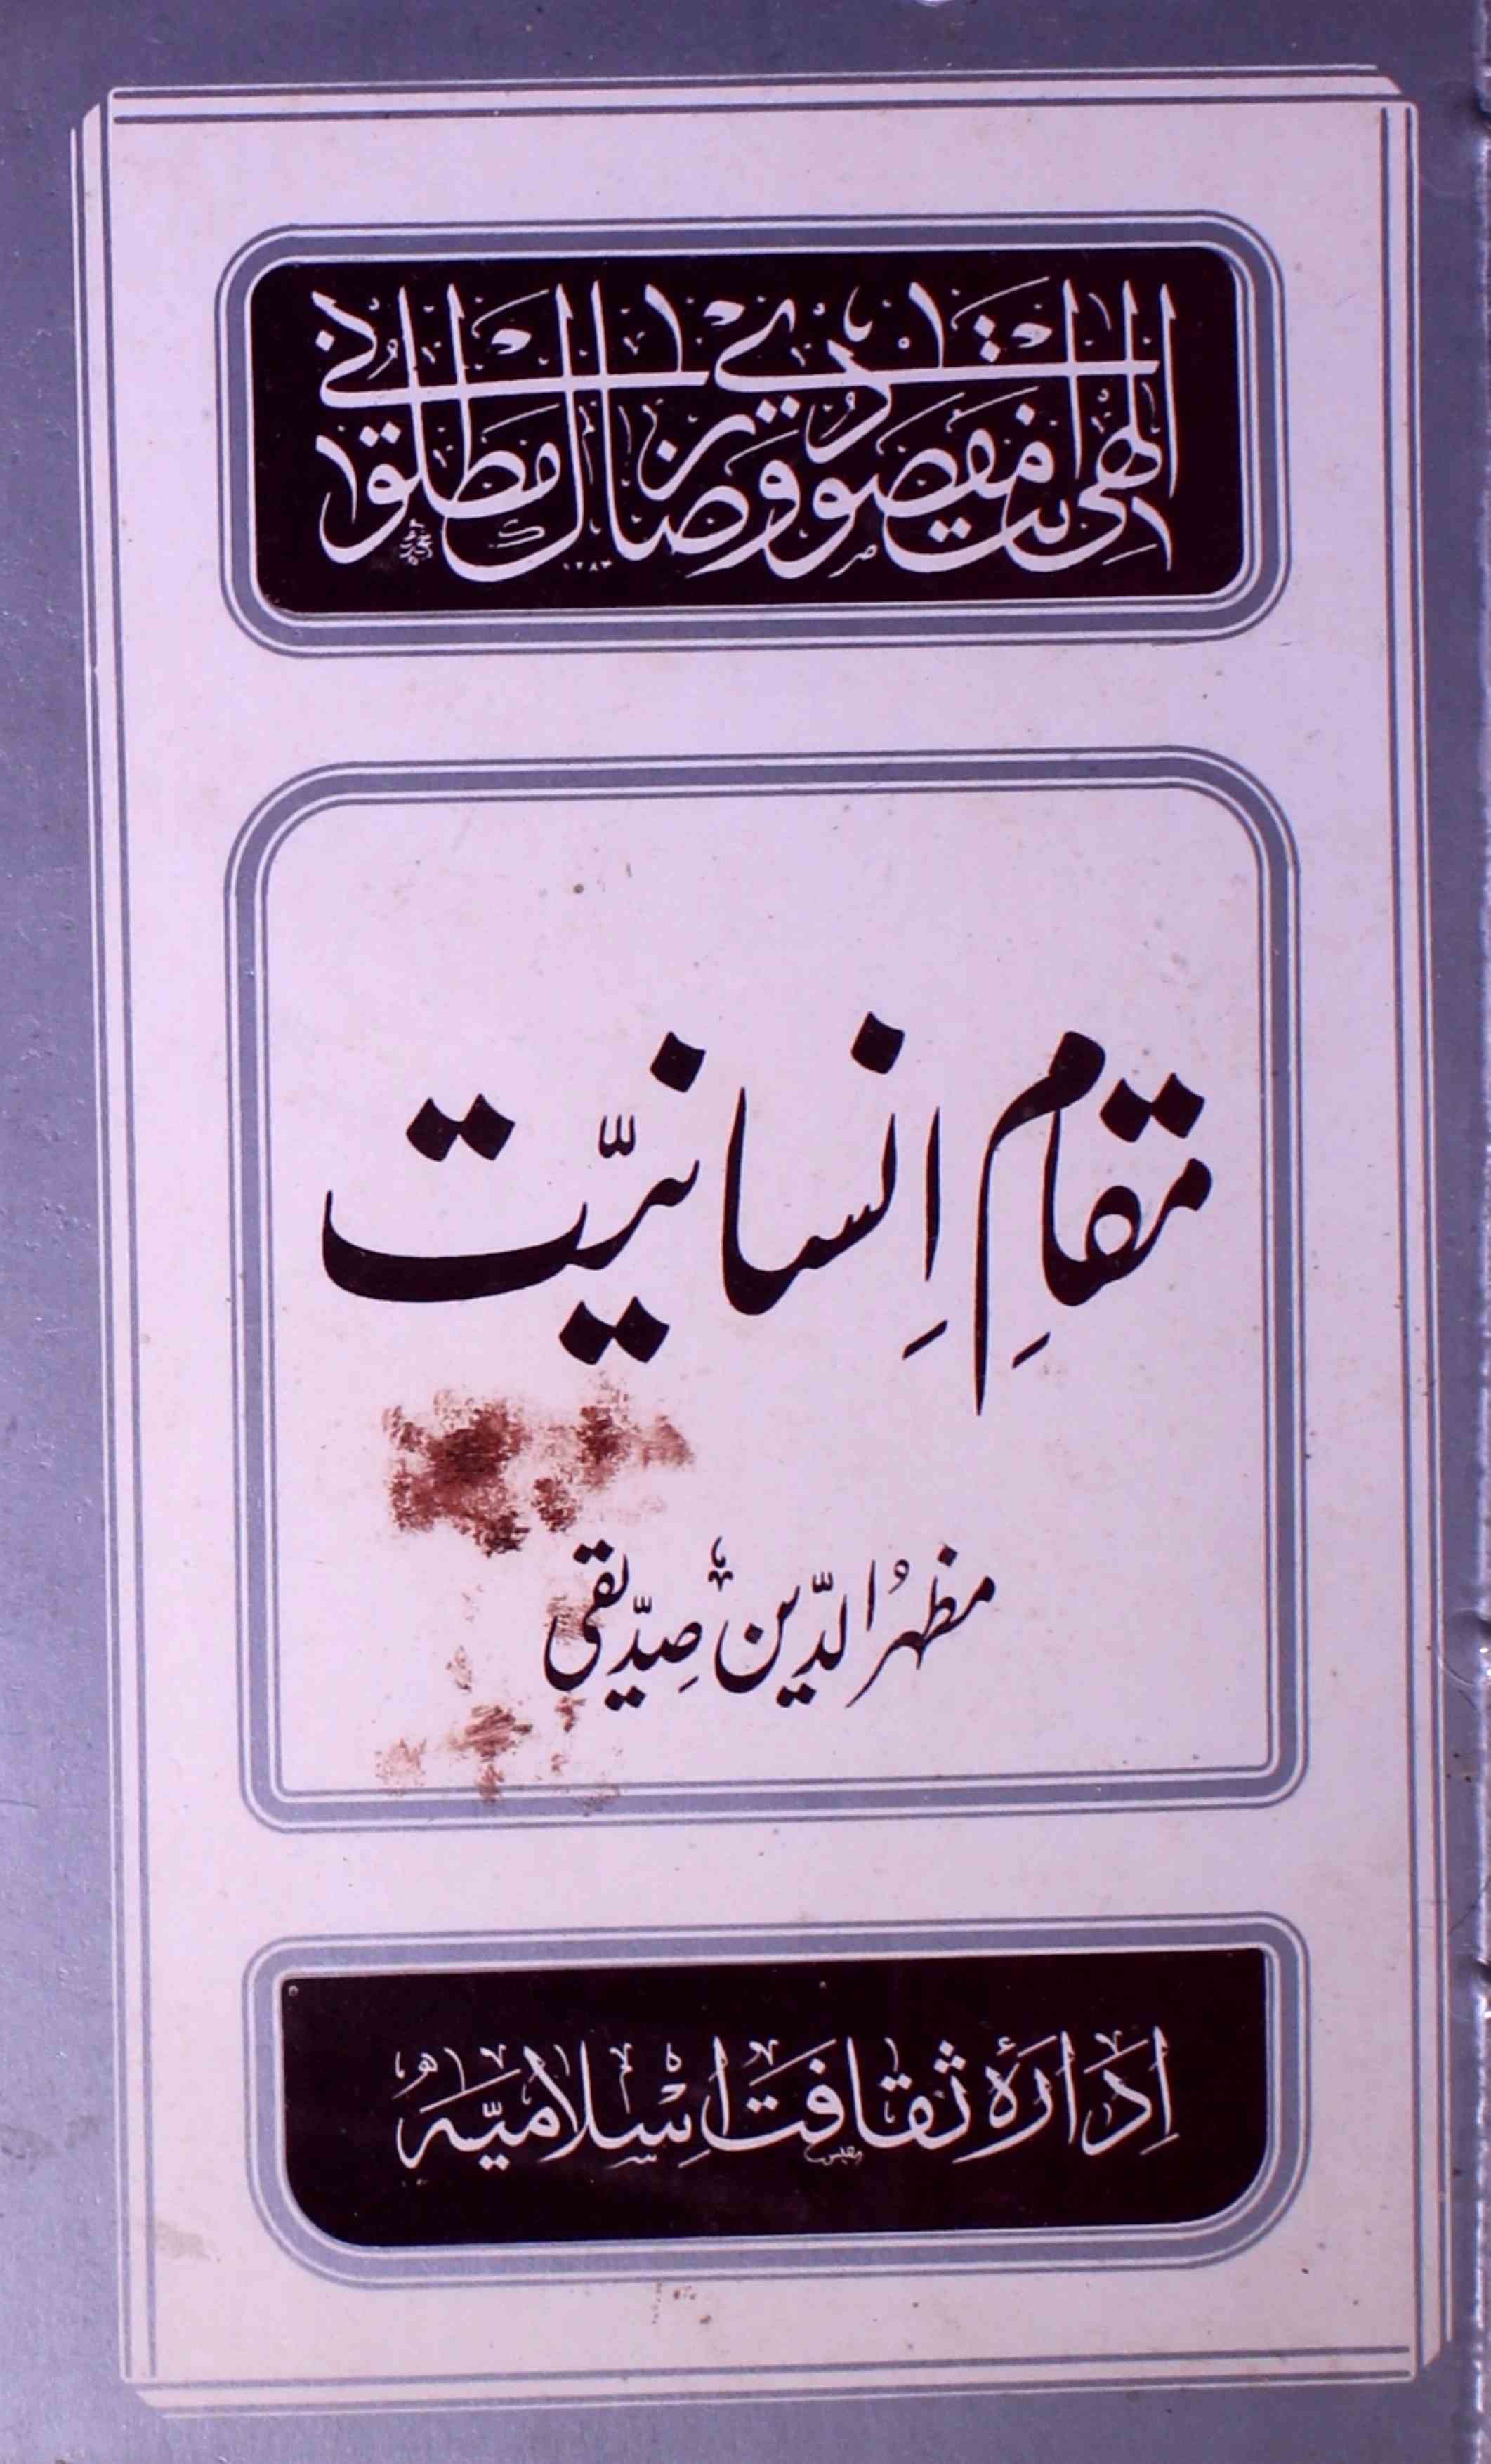 Muqam-e-Insaniyat